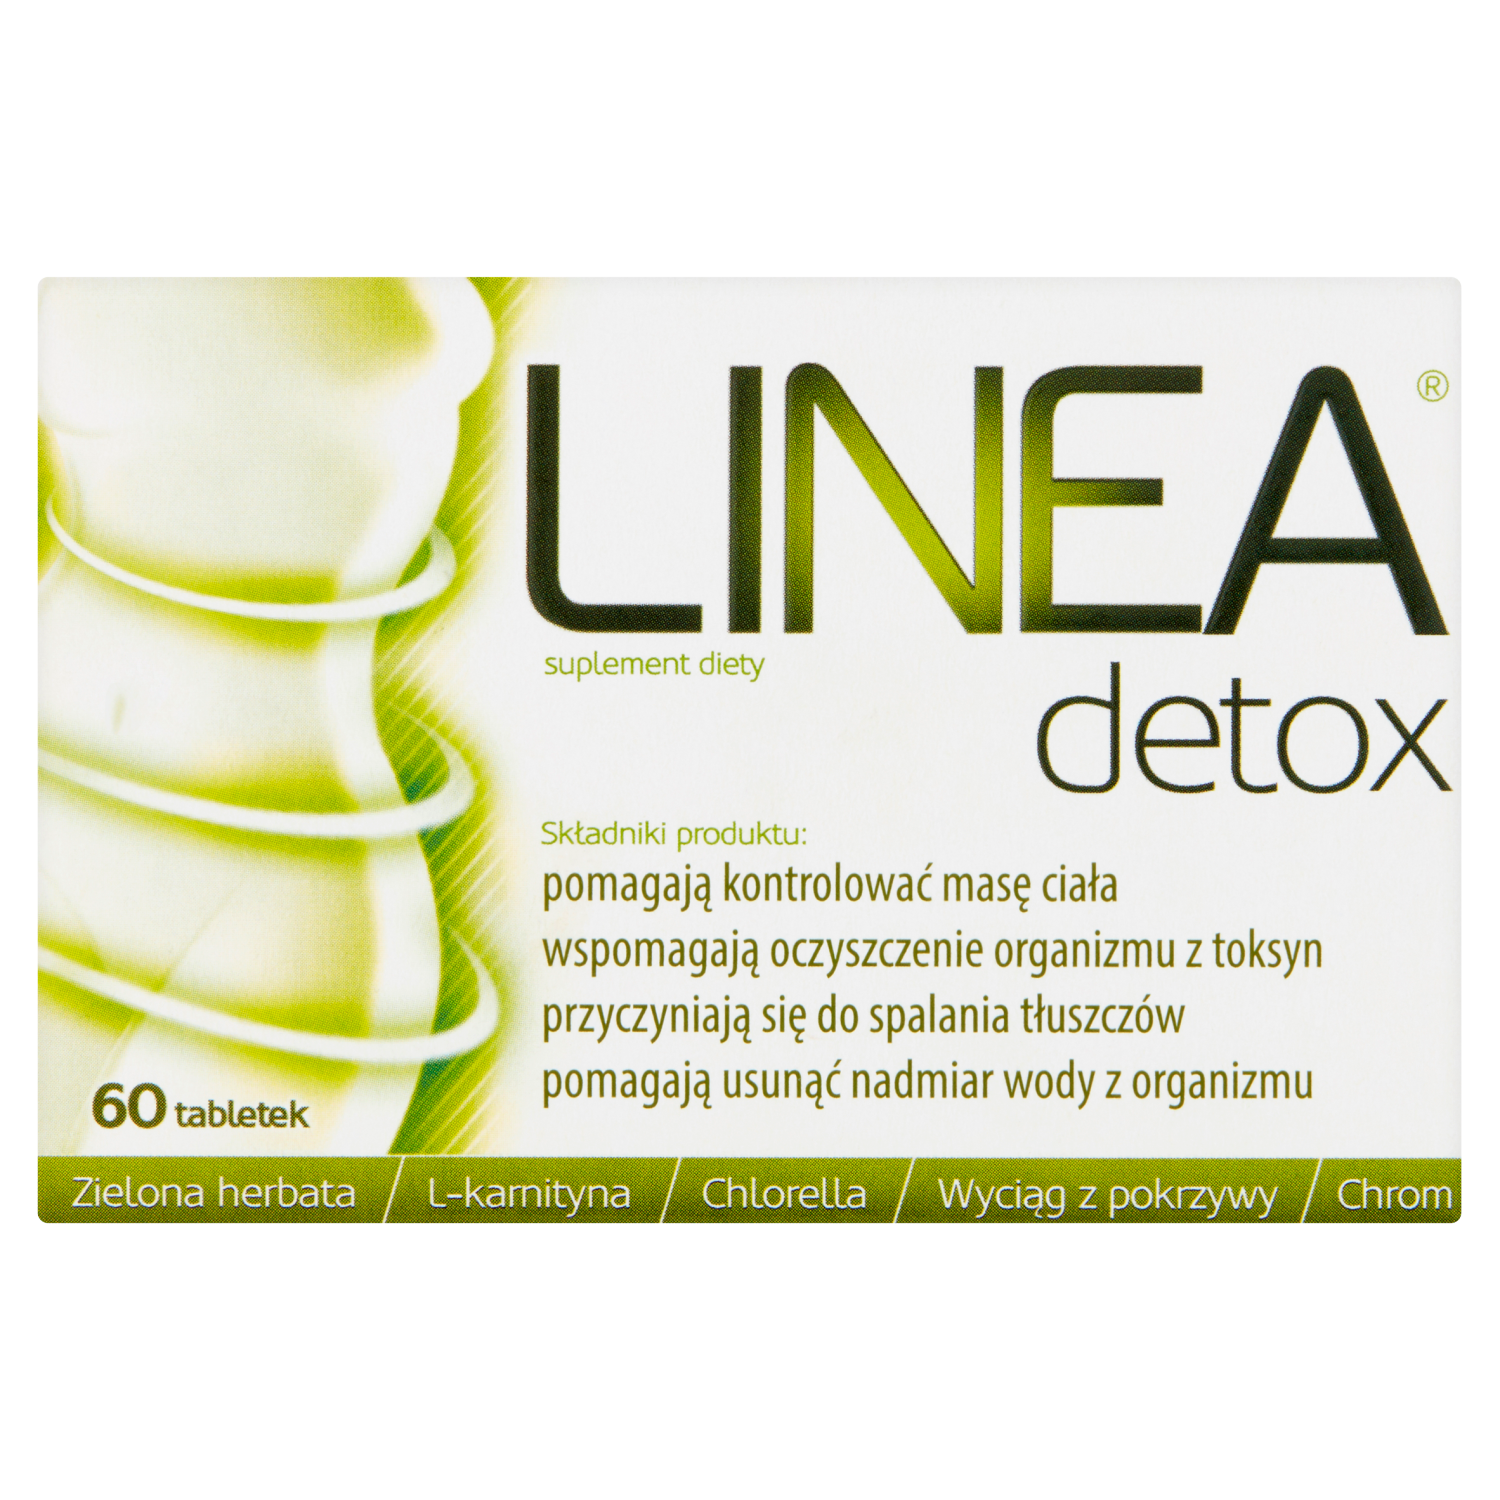 биологически активная добавка pills to go the detox hero 12 шт Linea Detox биологически активная добавка, 60 таблеток/1 упаковка